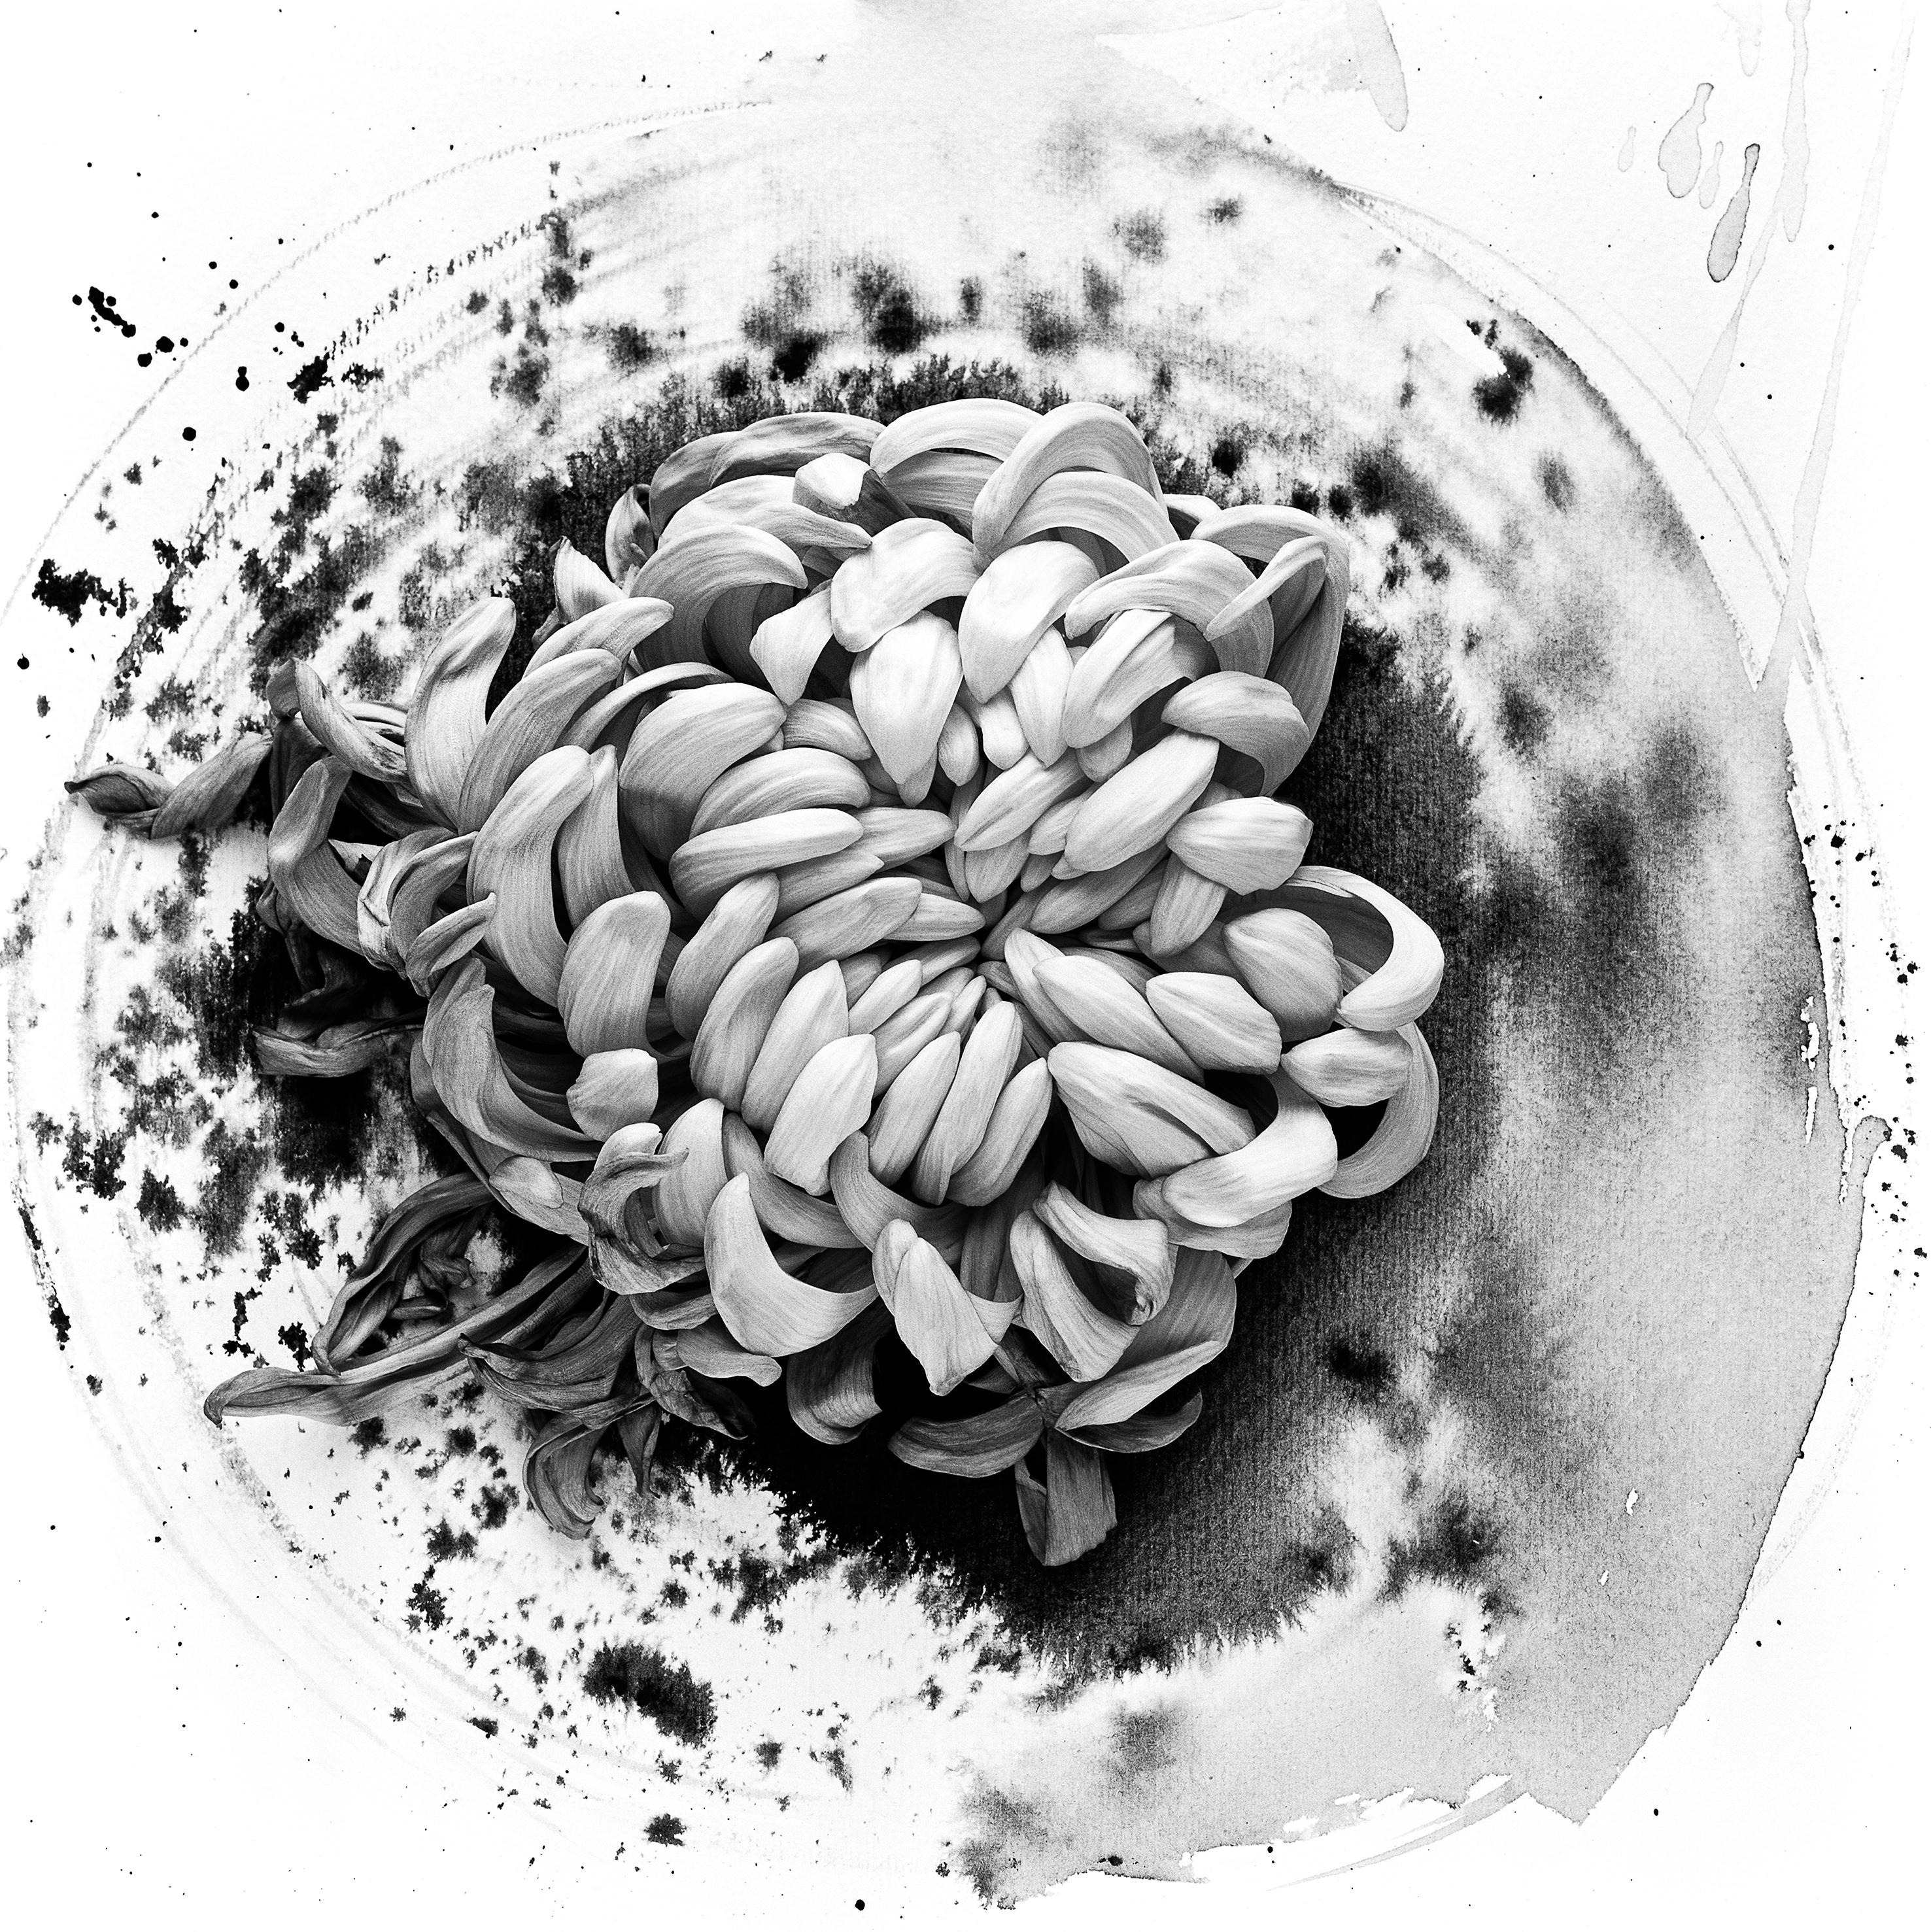 Abstract Painting Ugne Pouwell - Chrysantemum sur encre - photographie de film florale en composition avec abstraction à l'encre